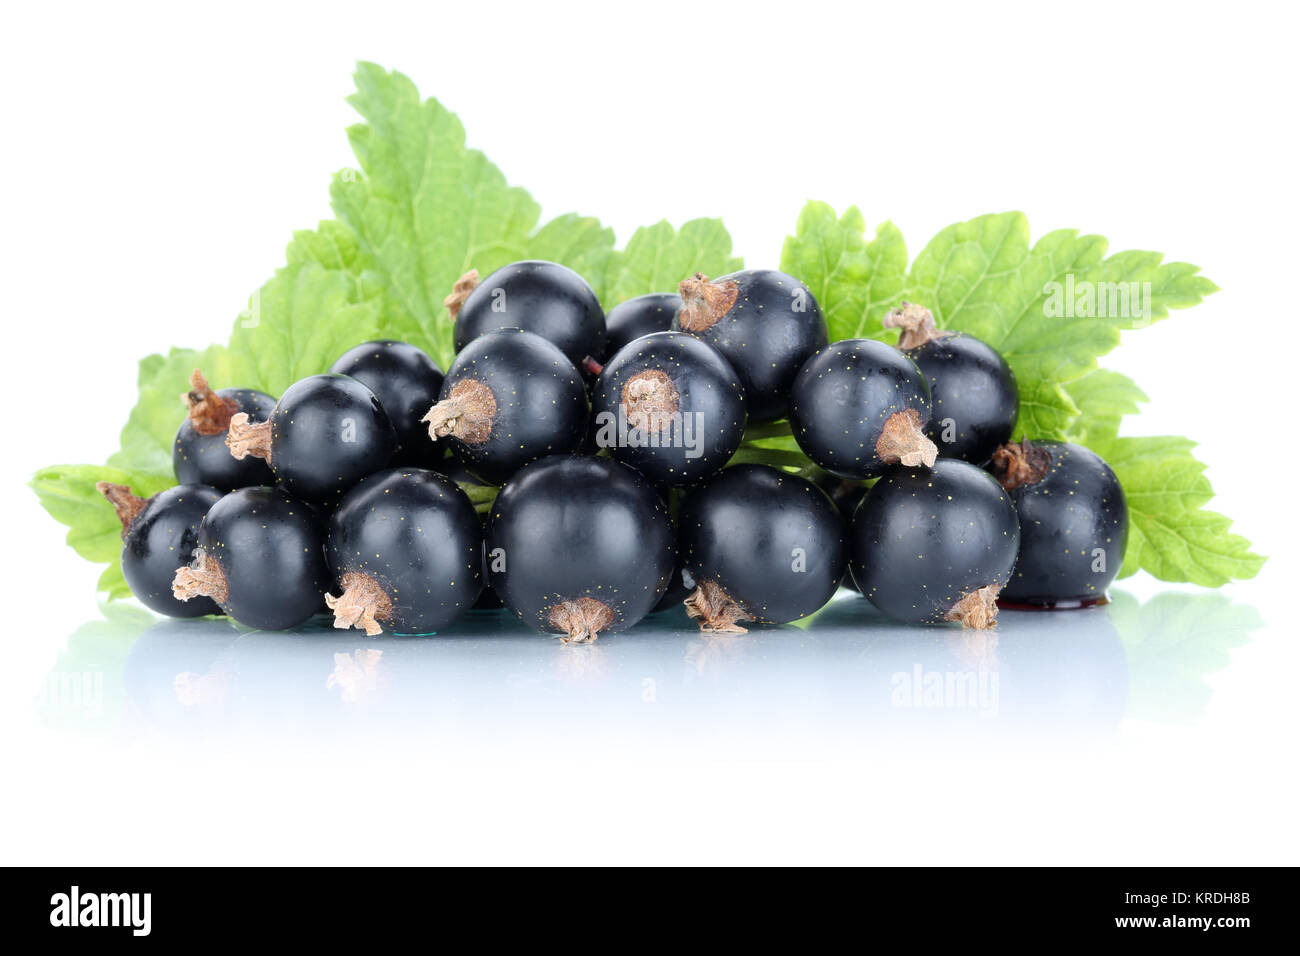 Schwarze Johannisbeeren Johannisbeere Früchte Frucht frische Beeren Obst Freisteller vor einem weissen Hintergrund Stock Photo